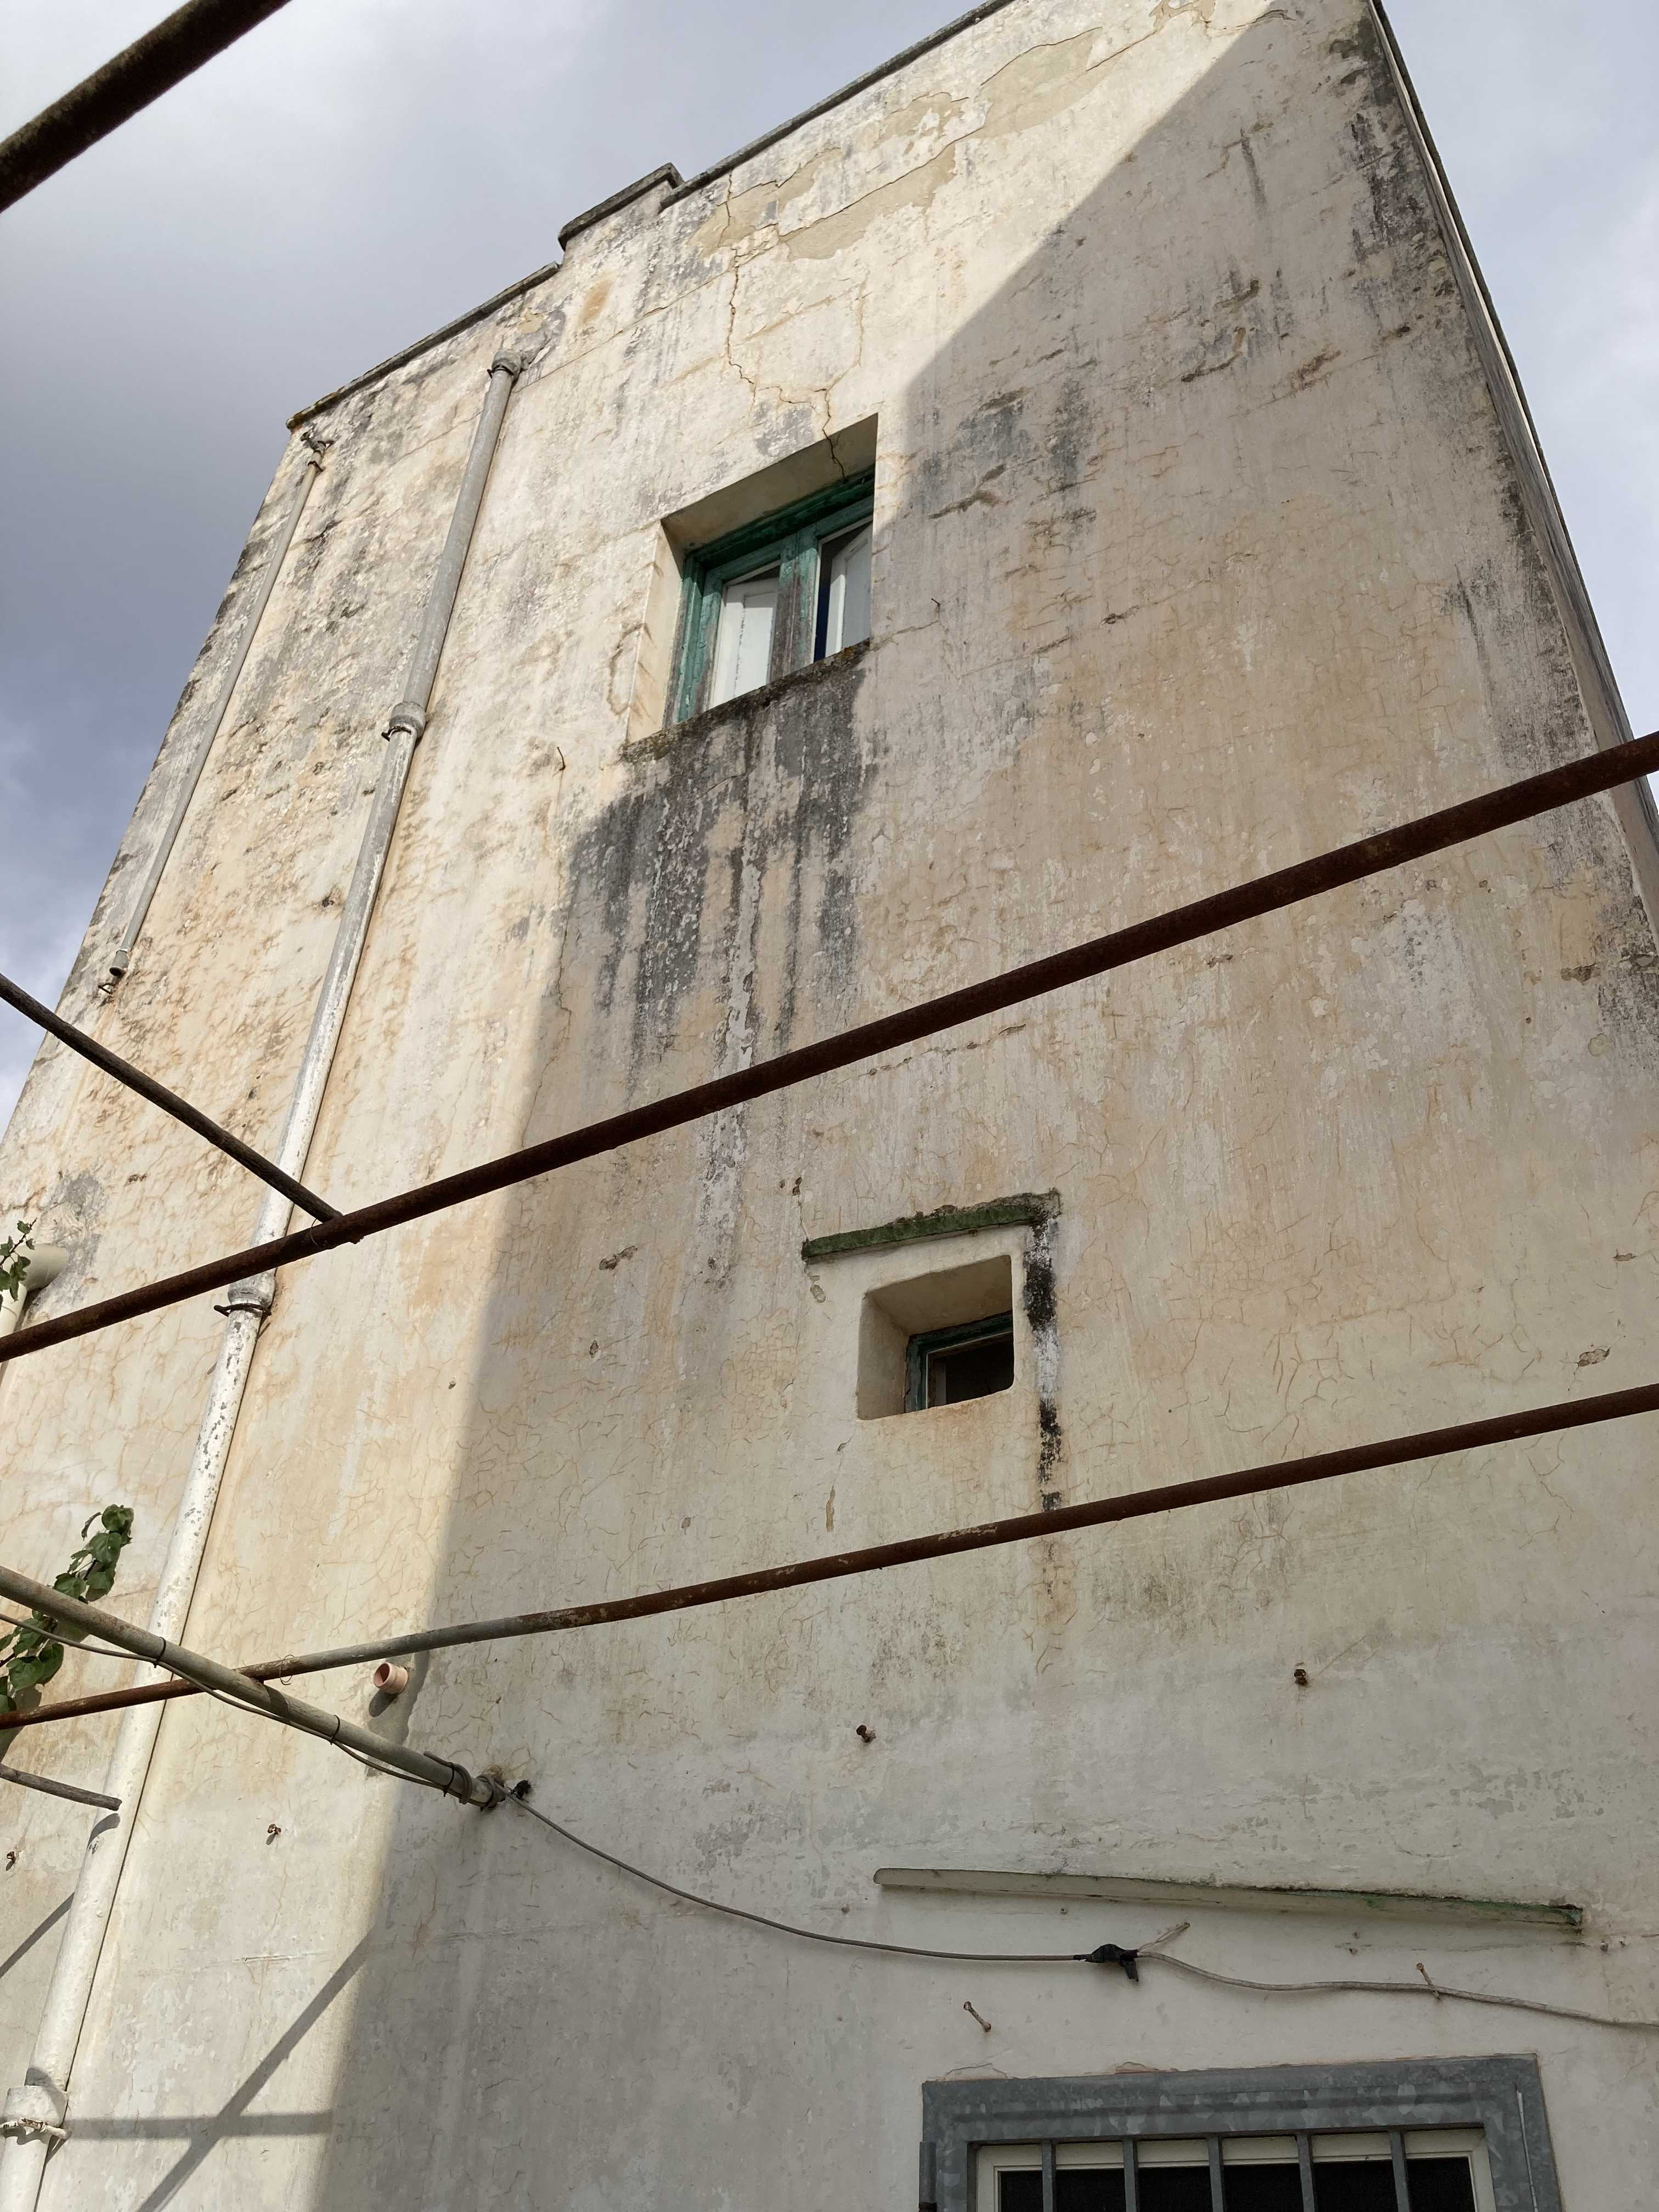 Vendite Salento: Vendita appartamento (Castrignano del Capo) - retro